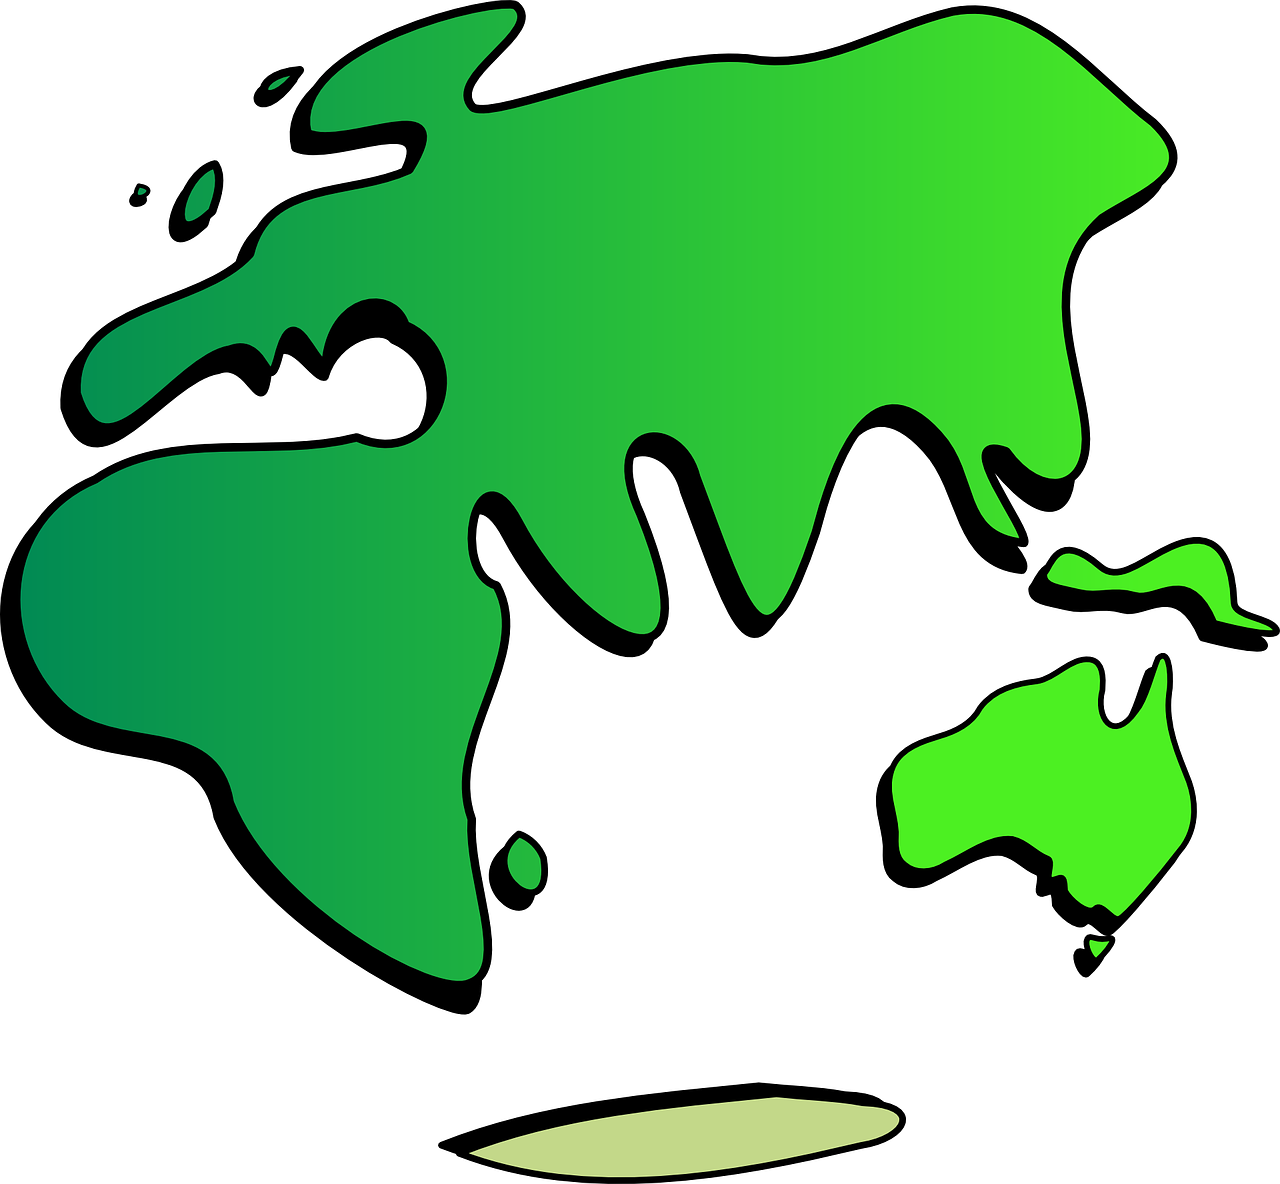 Žemynai, Gaublys, Žemė, Planeta, Tarptautinis, Pasaulio Žemėlapis, Visuotinis, Geografija, Globalizacija, Pasaulis